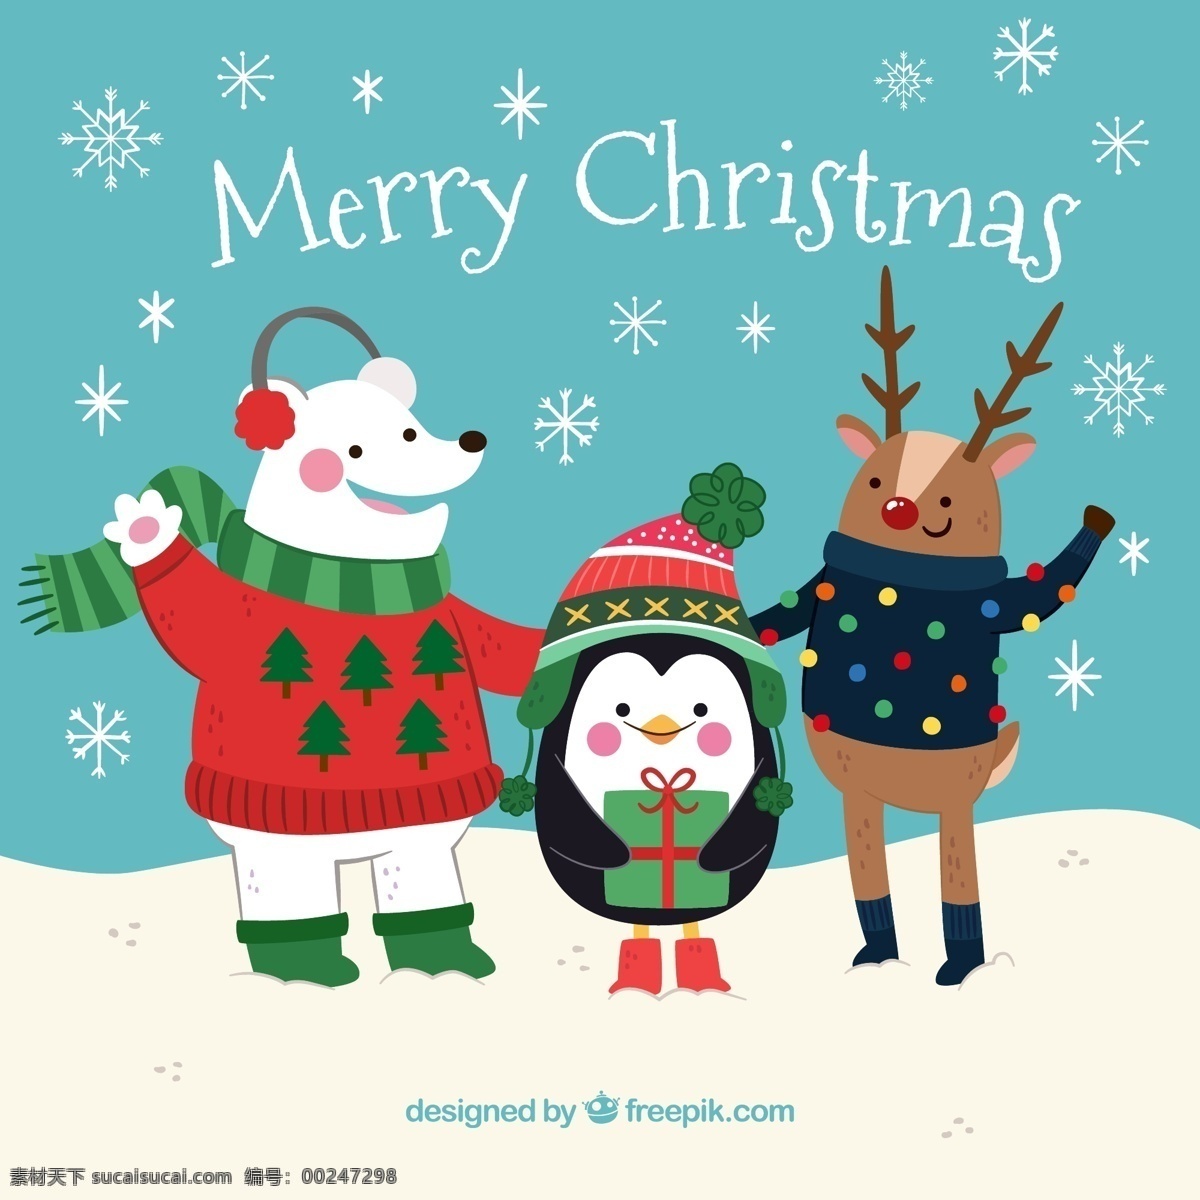 彩绘 圣诞节 雪地 熊 鹿 企鹅 矢量图 merry christmas 白熊 驯鹿 雪花 礼物 礼盒 文化艺术 节日庆祝